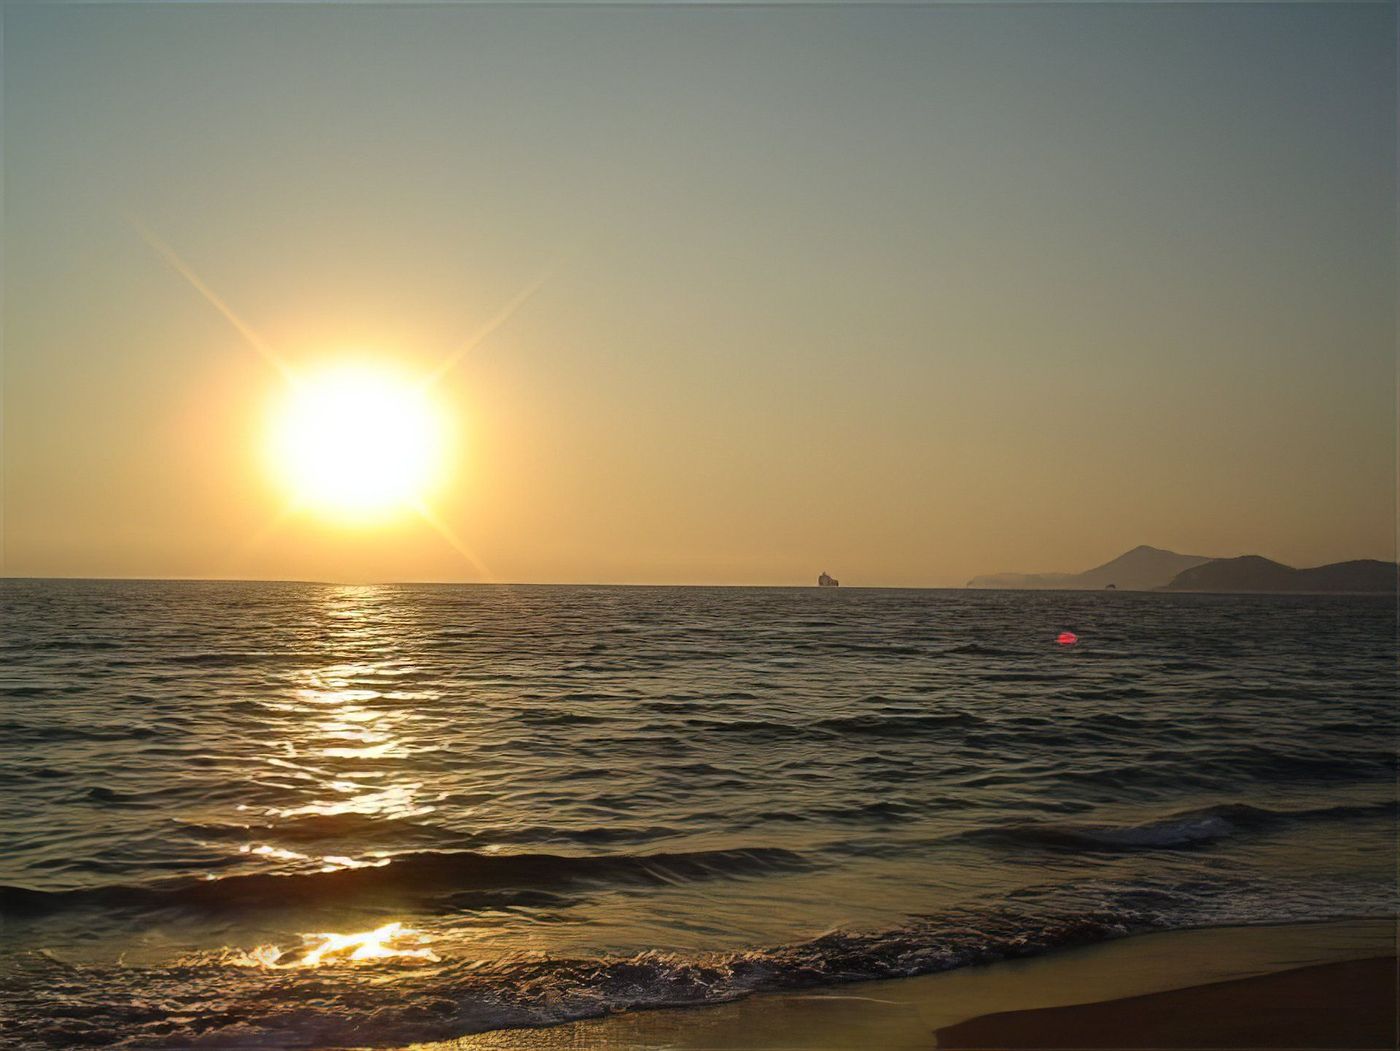 Bateau sur la mer au soleil couchant